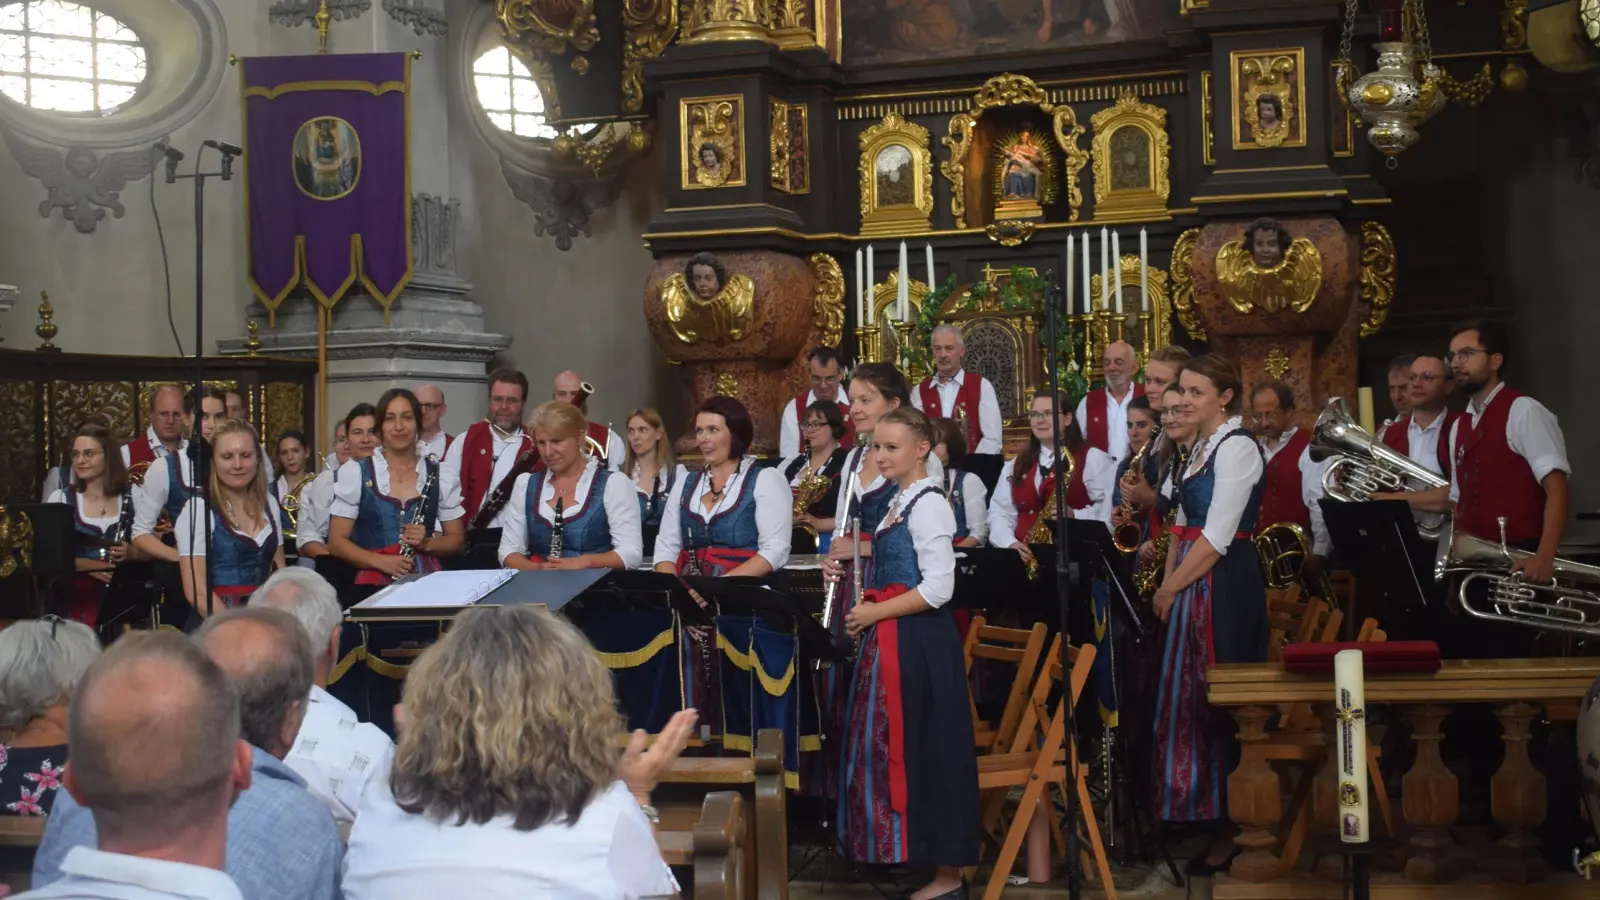 Der Dasinger Musikverein erhielt in der Wallfahrtskirche Maria Birnbaum in Sielenbach großen Applaus für seine Darbietung. (Foto: Thomas Weinmüller)